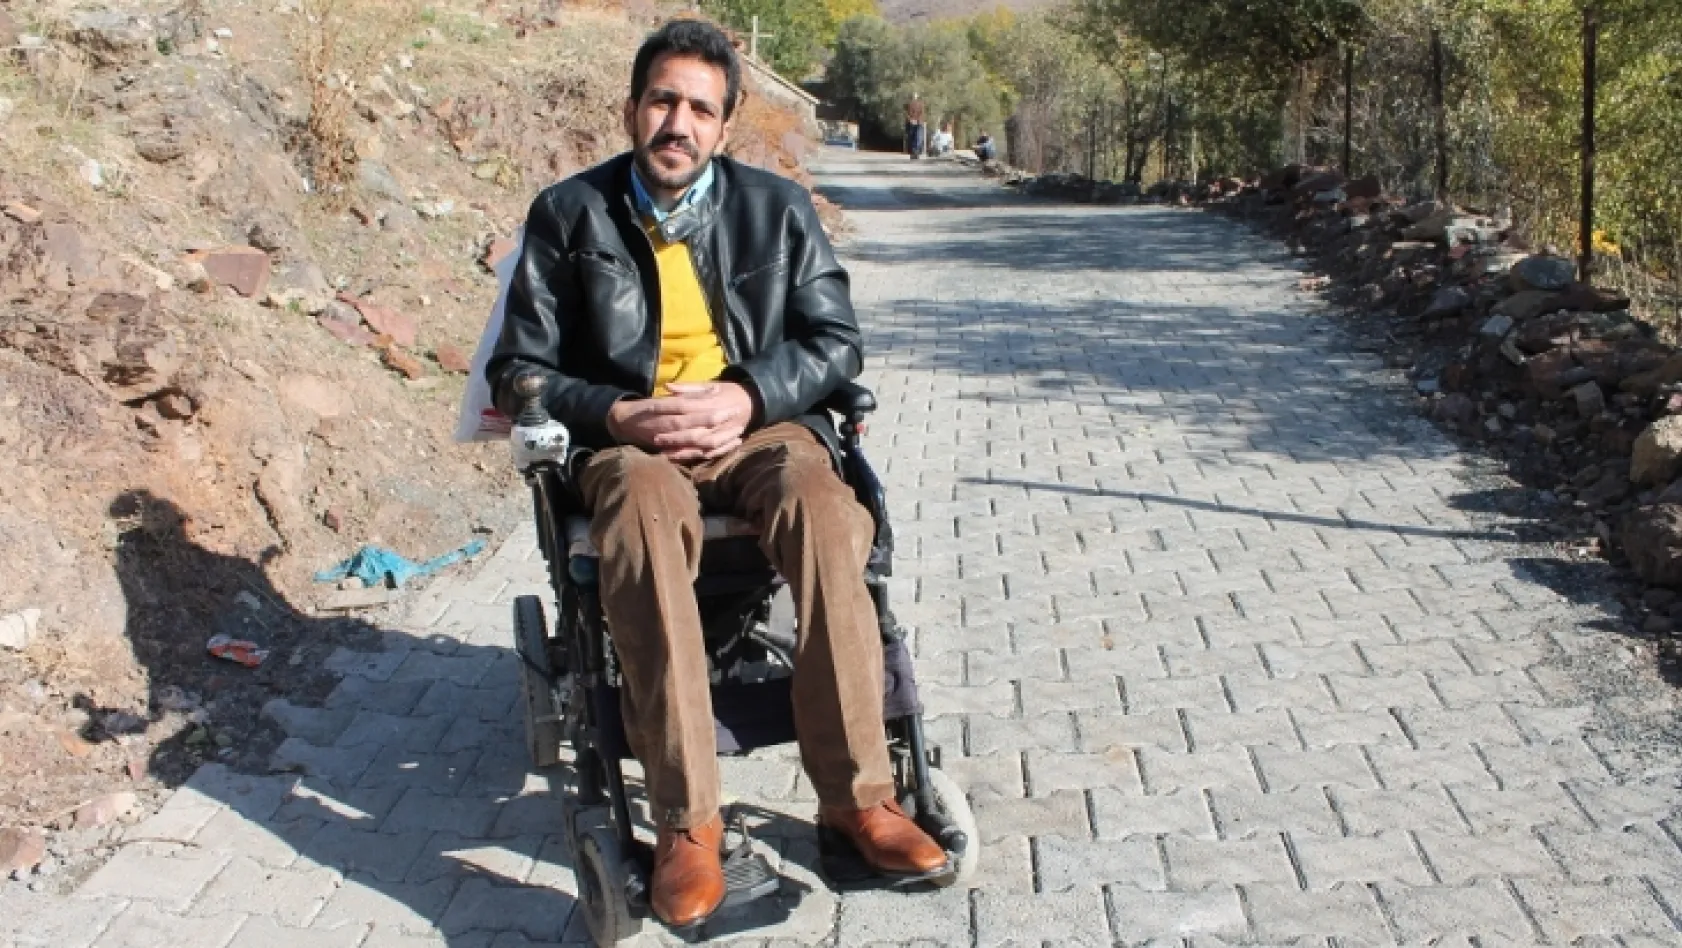 Kaymakamın azmi, engelli Cahit'i ev hapsinden kurtardı